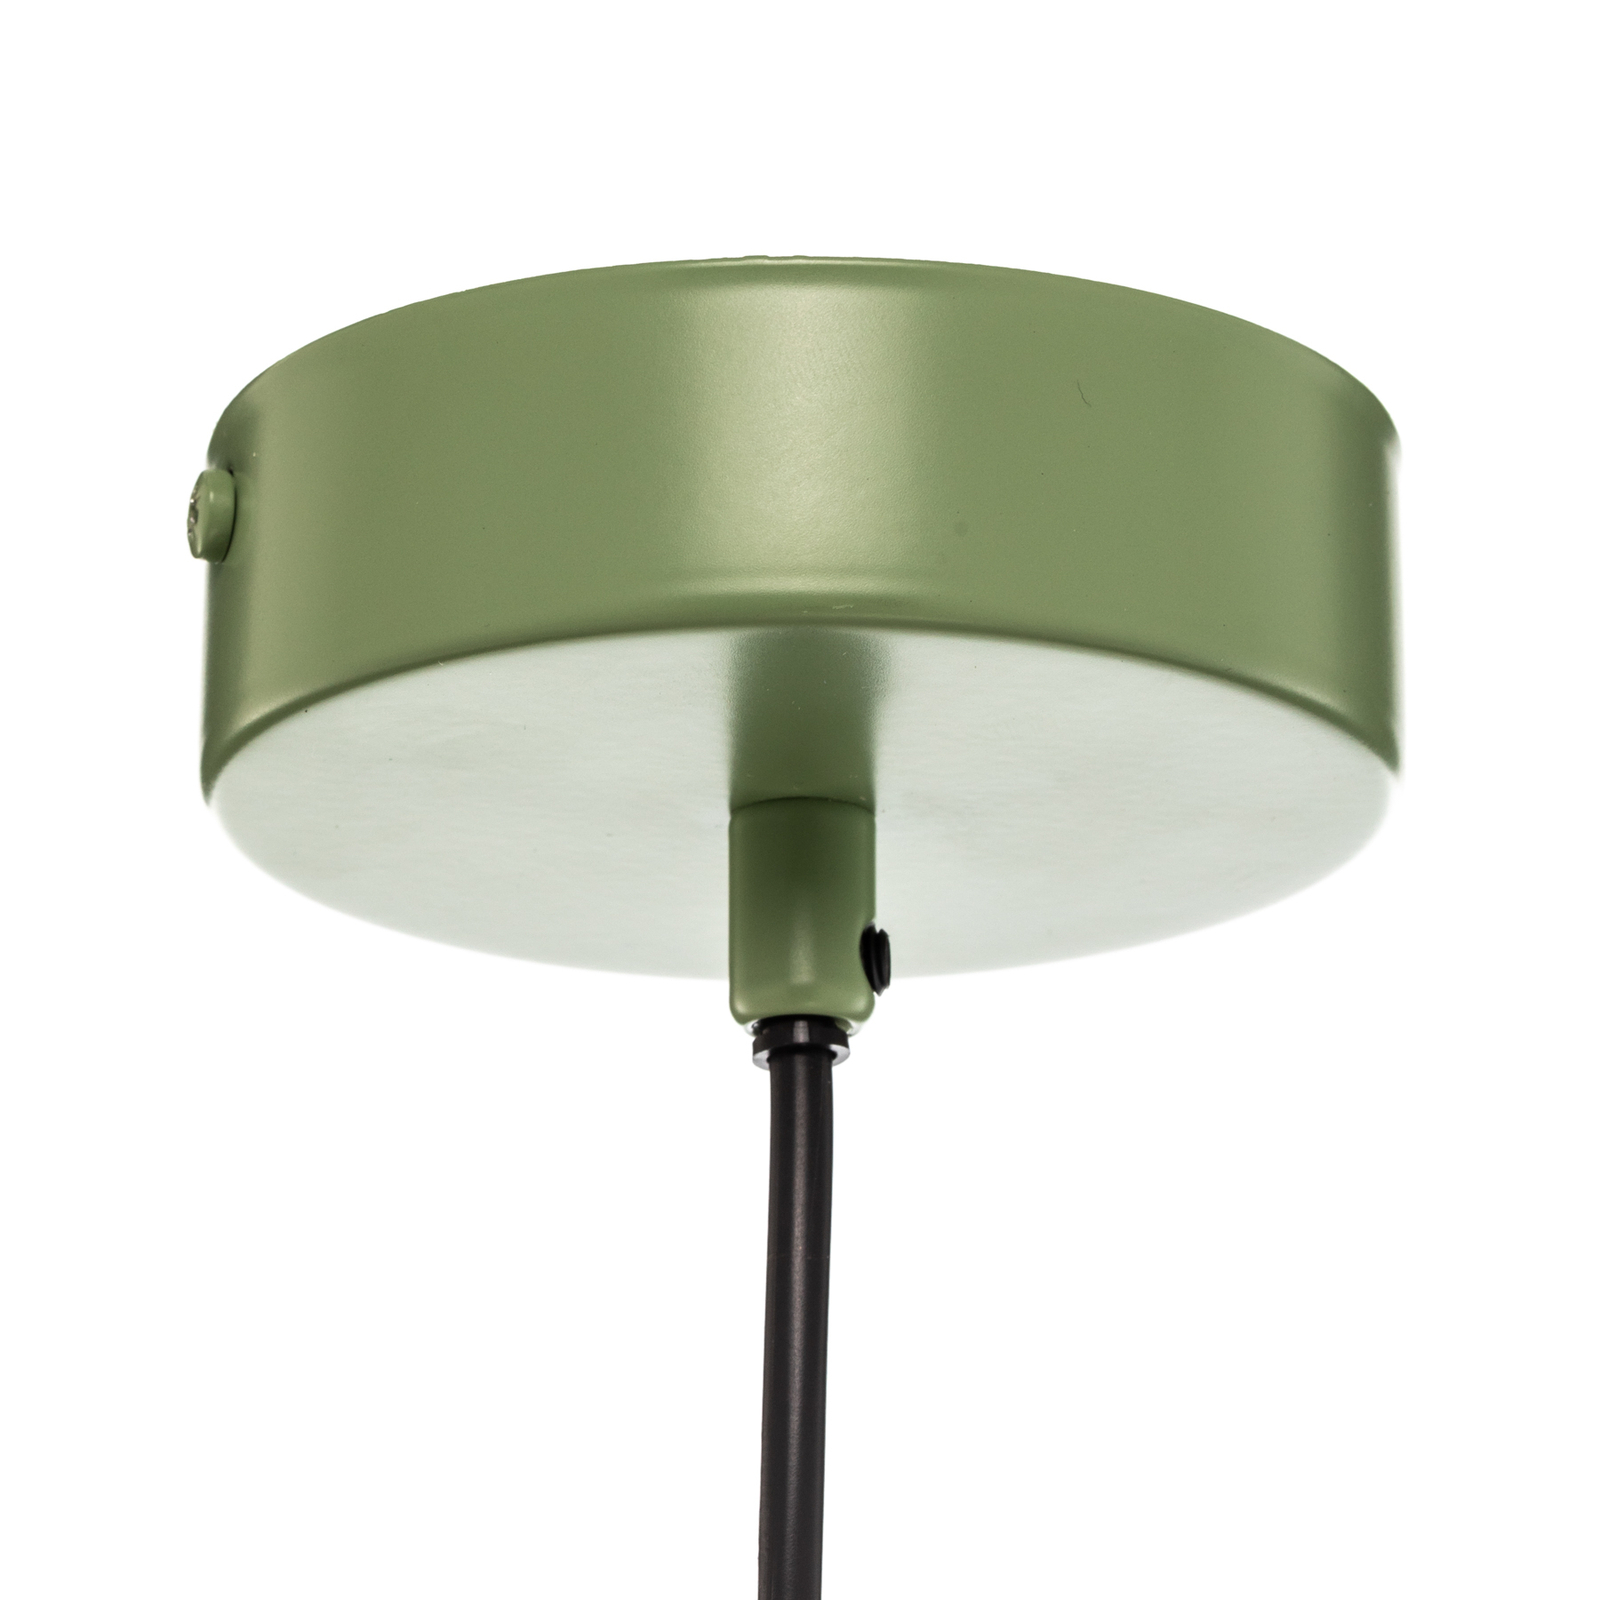 Samba hanglamp, 1-lamp, groen/wit